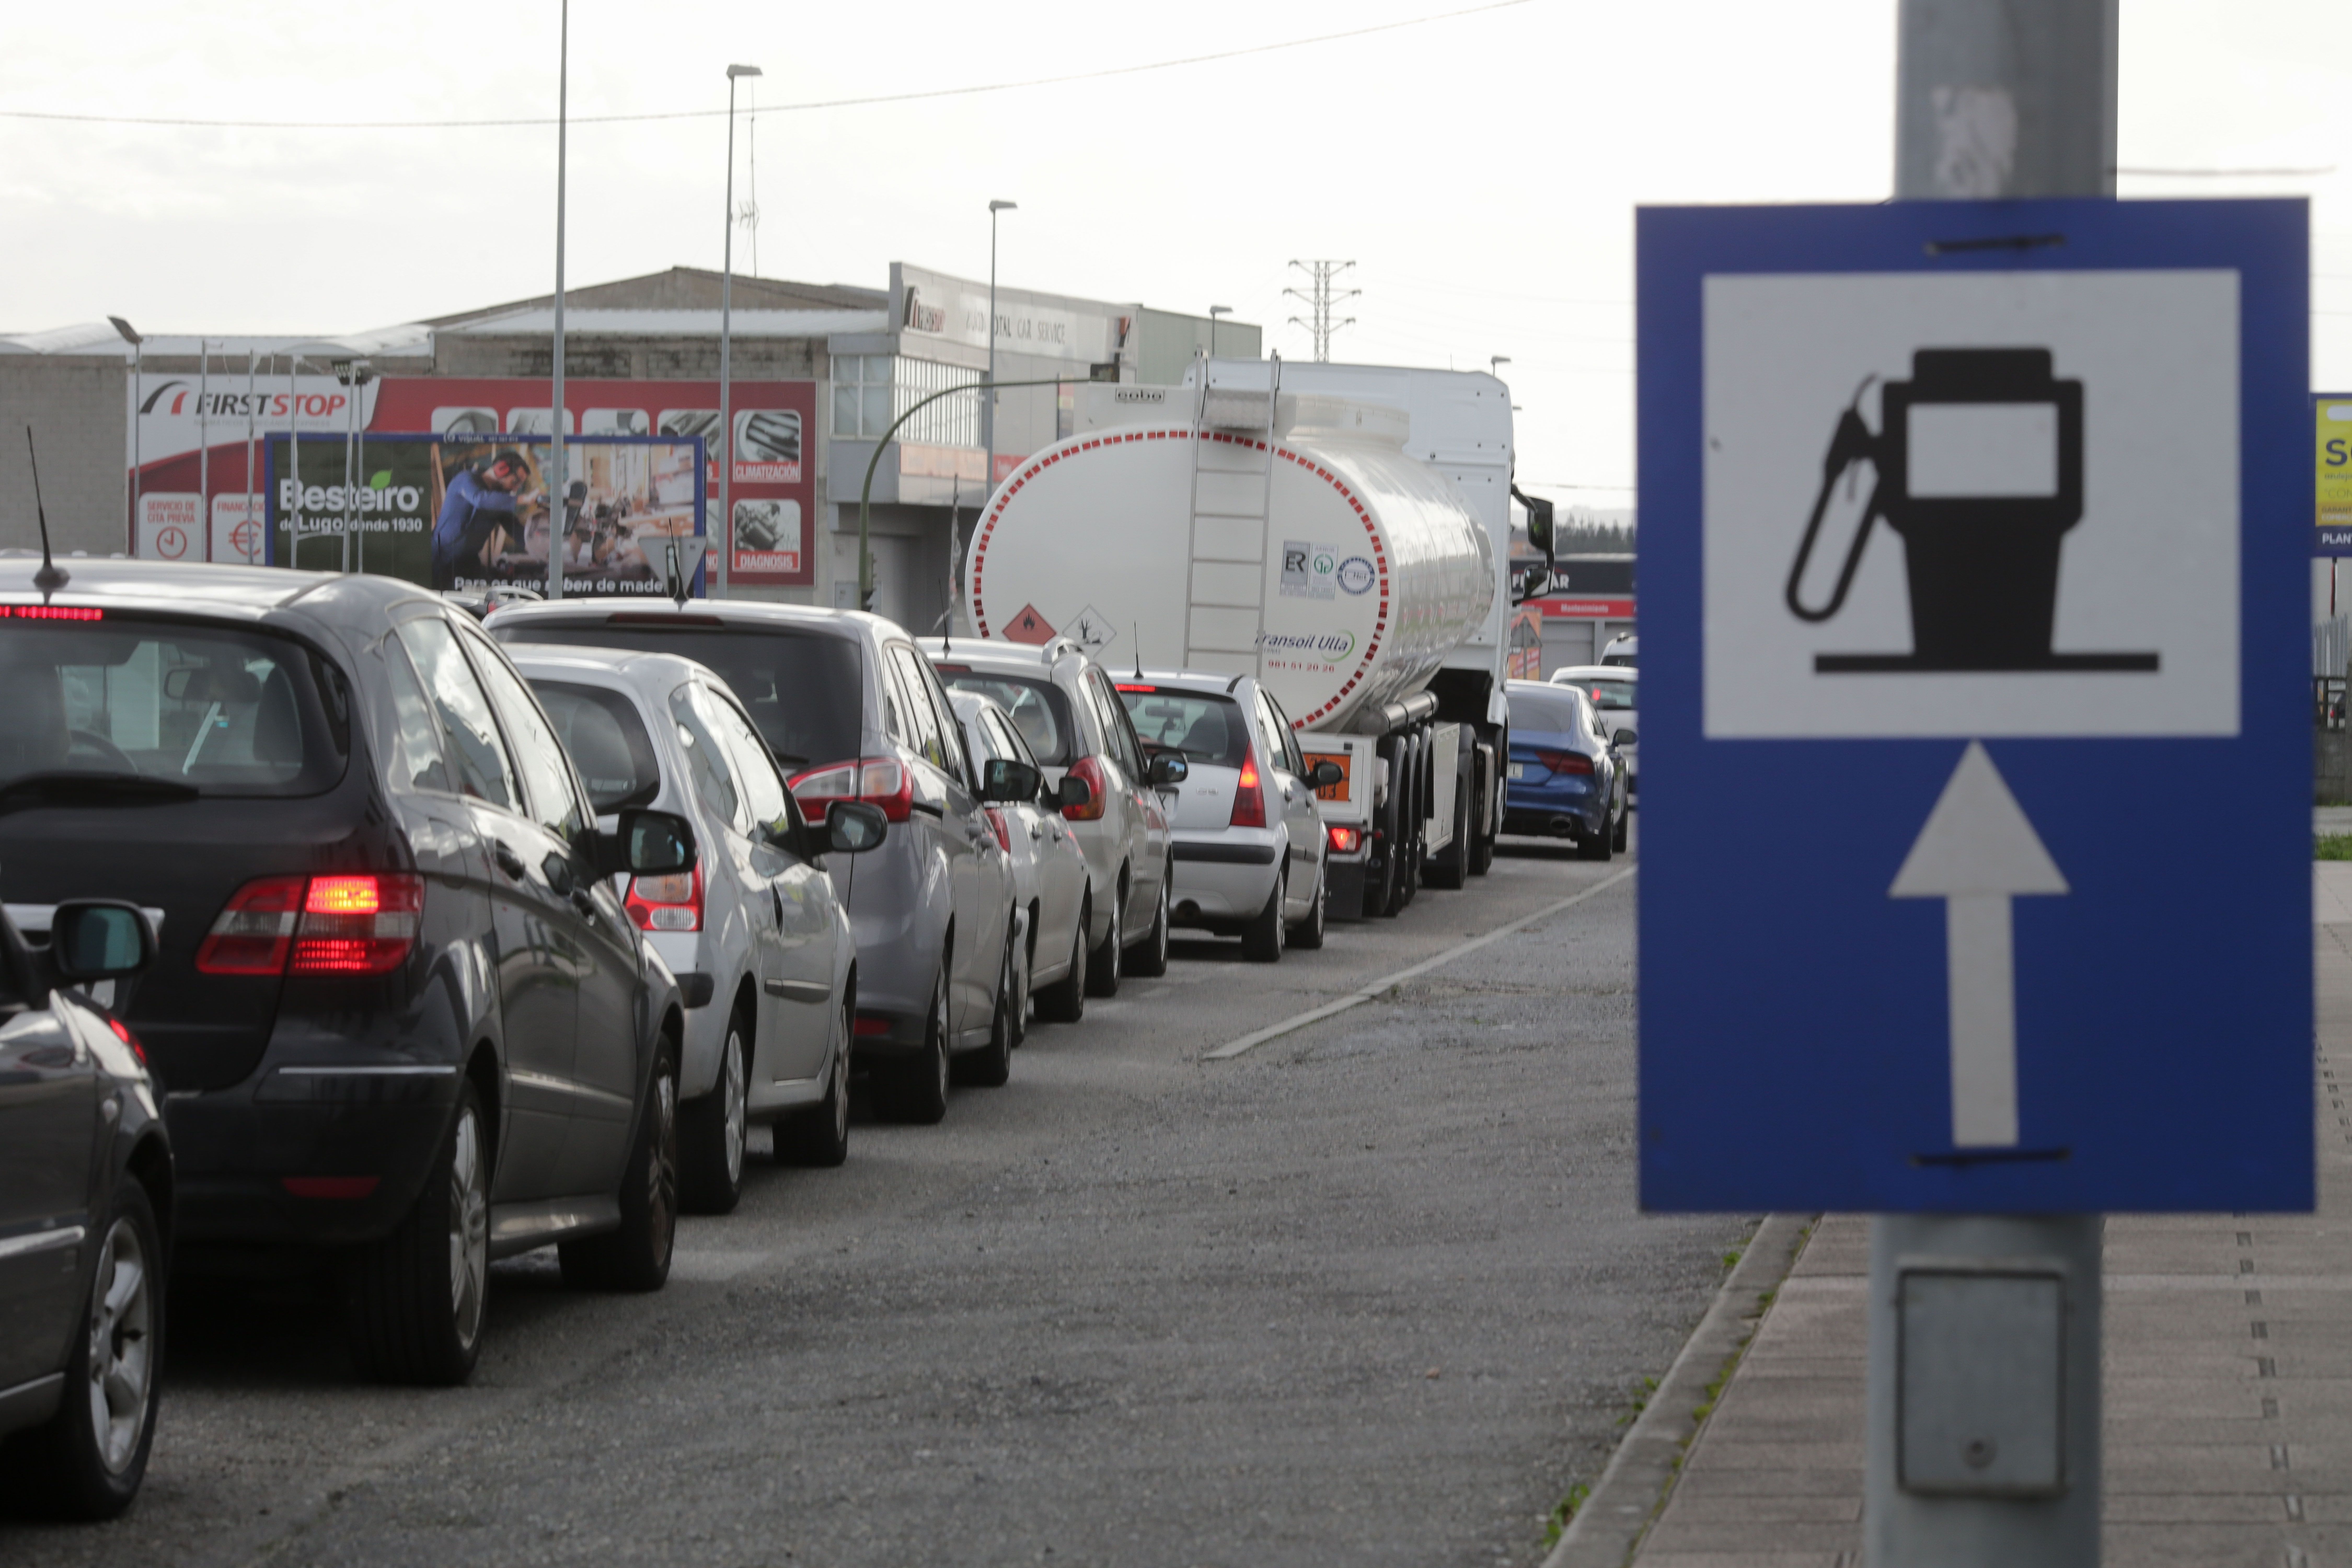 Los 27 aprueban la prohibición de coches de combustión en 2035 tras levantar Alemania su veto